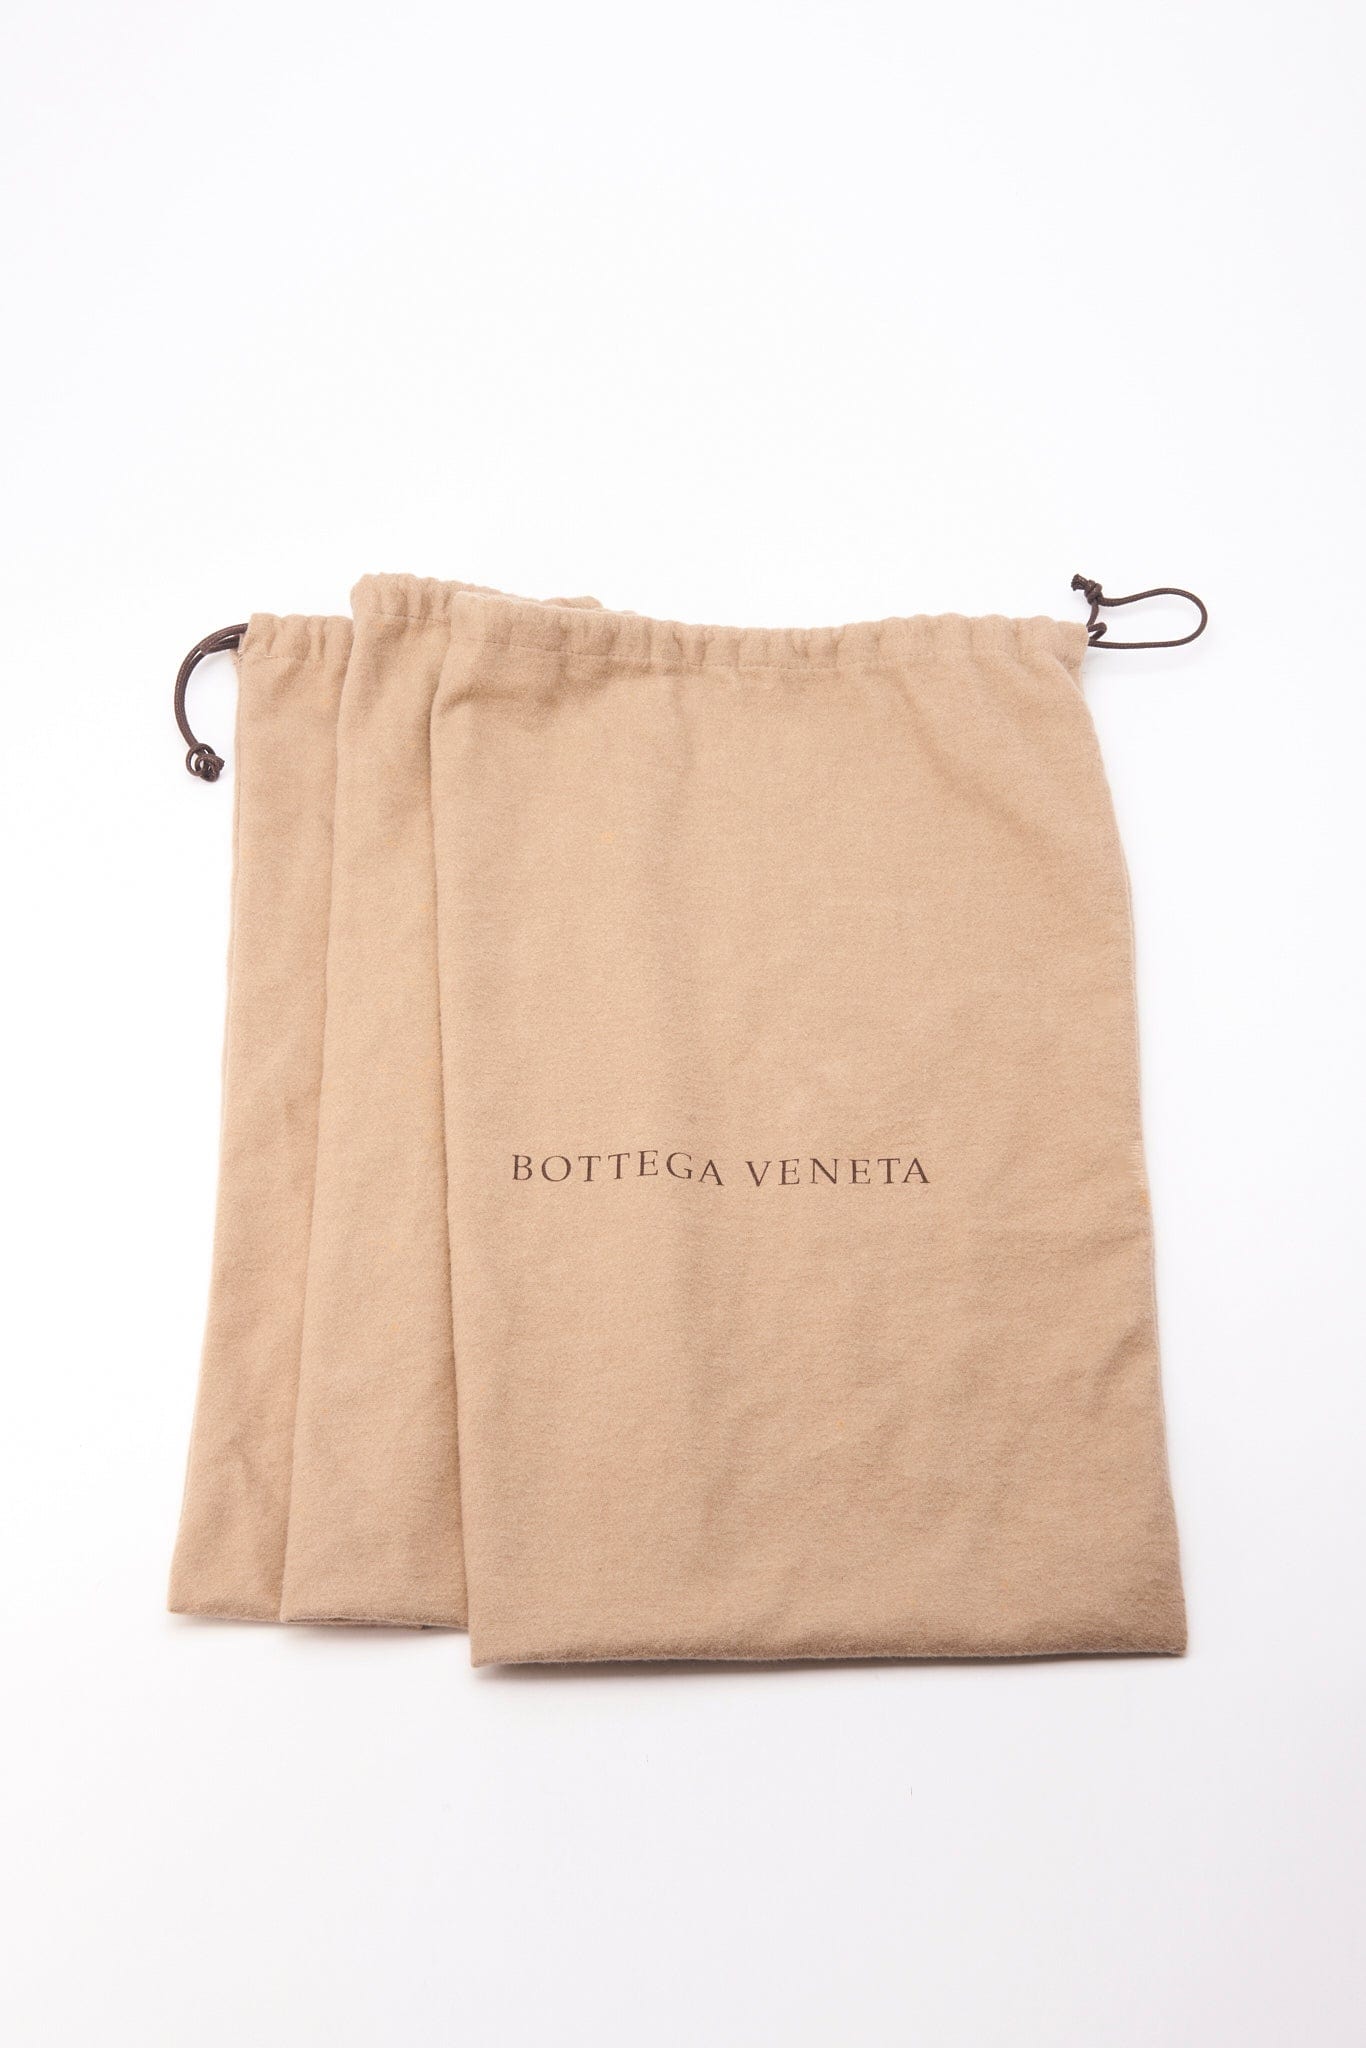 Bottega Veneta Canvas and Leather Tote